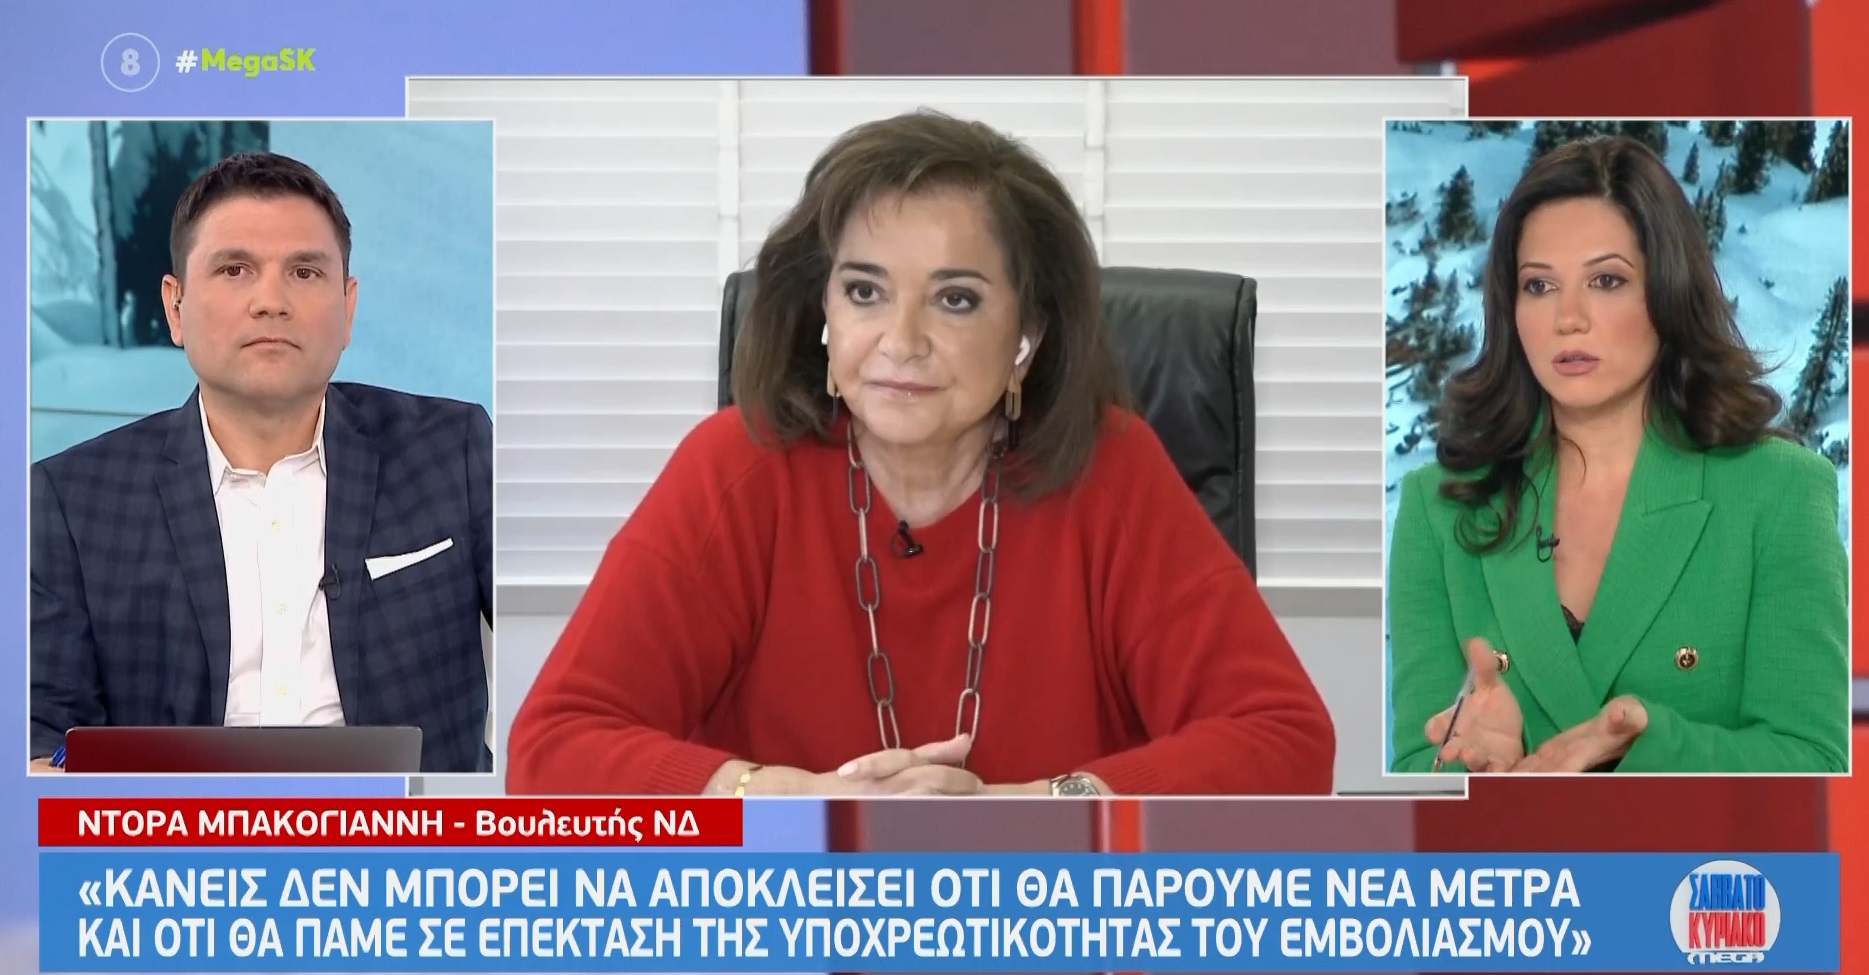 Ντόρα Μπακογιάννη: Δεν θα γίνουν πρόωρες εκλογές, πιστεύω ότι ο κόσμος θα δώσει την εμπιστοσύνη του στον Κυριάκο Μητσοτάκη